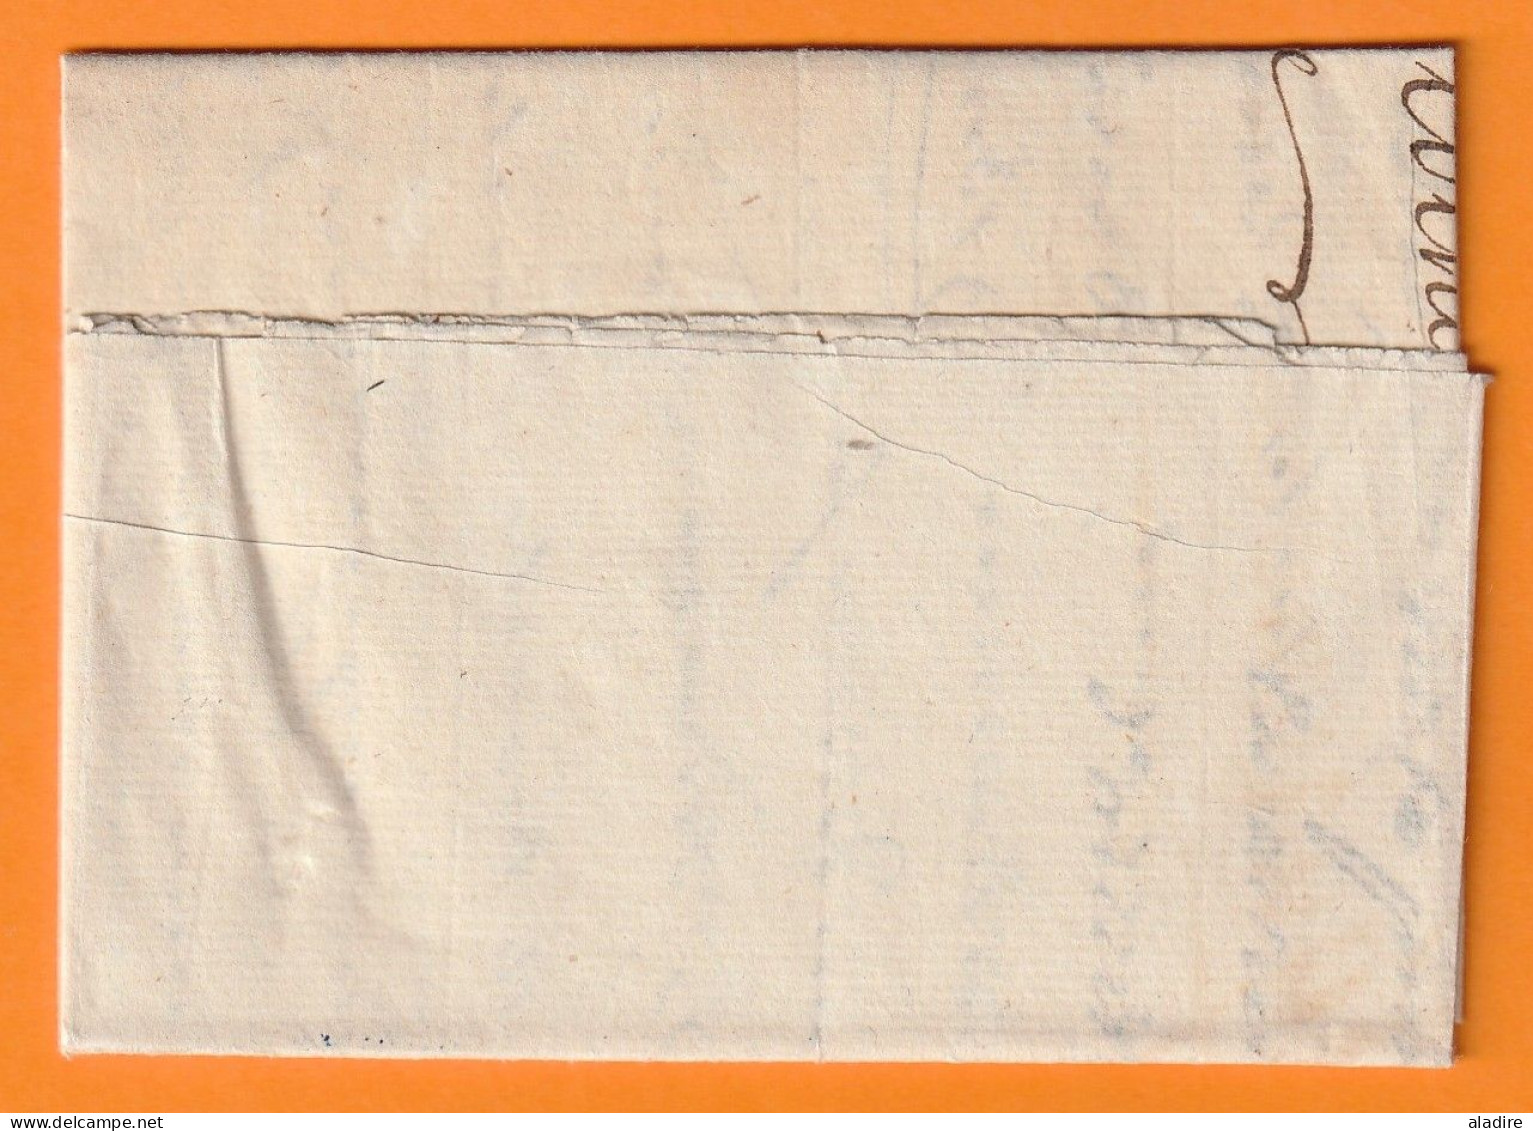 1801 - Marque Postale 85 MENTON (27 X 10 Mm) Sur Lettre De 2 Pages Vers AGDE, Hérault, (Albini/Bousquet) - 1801-1848: Vorläufer XIX